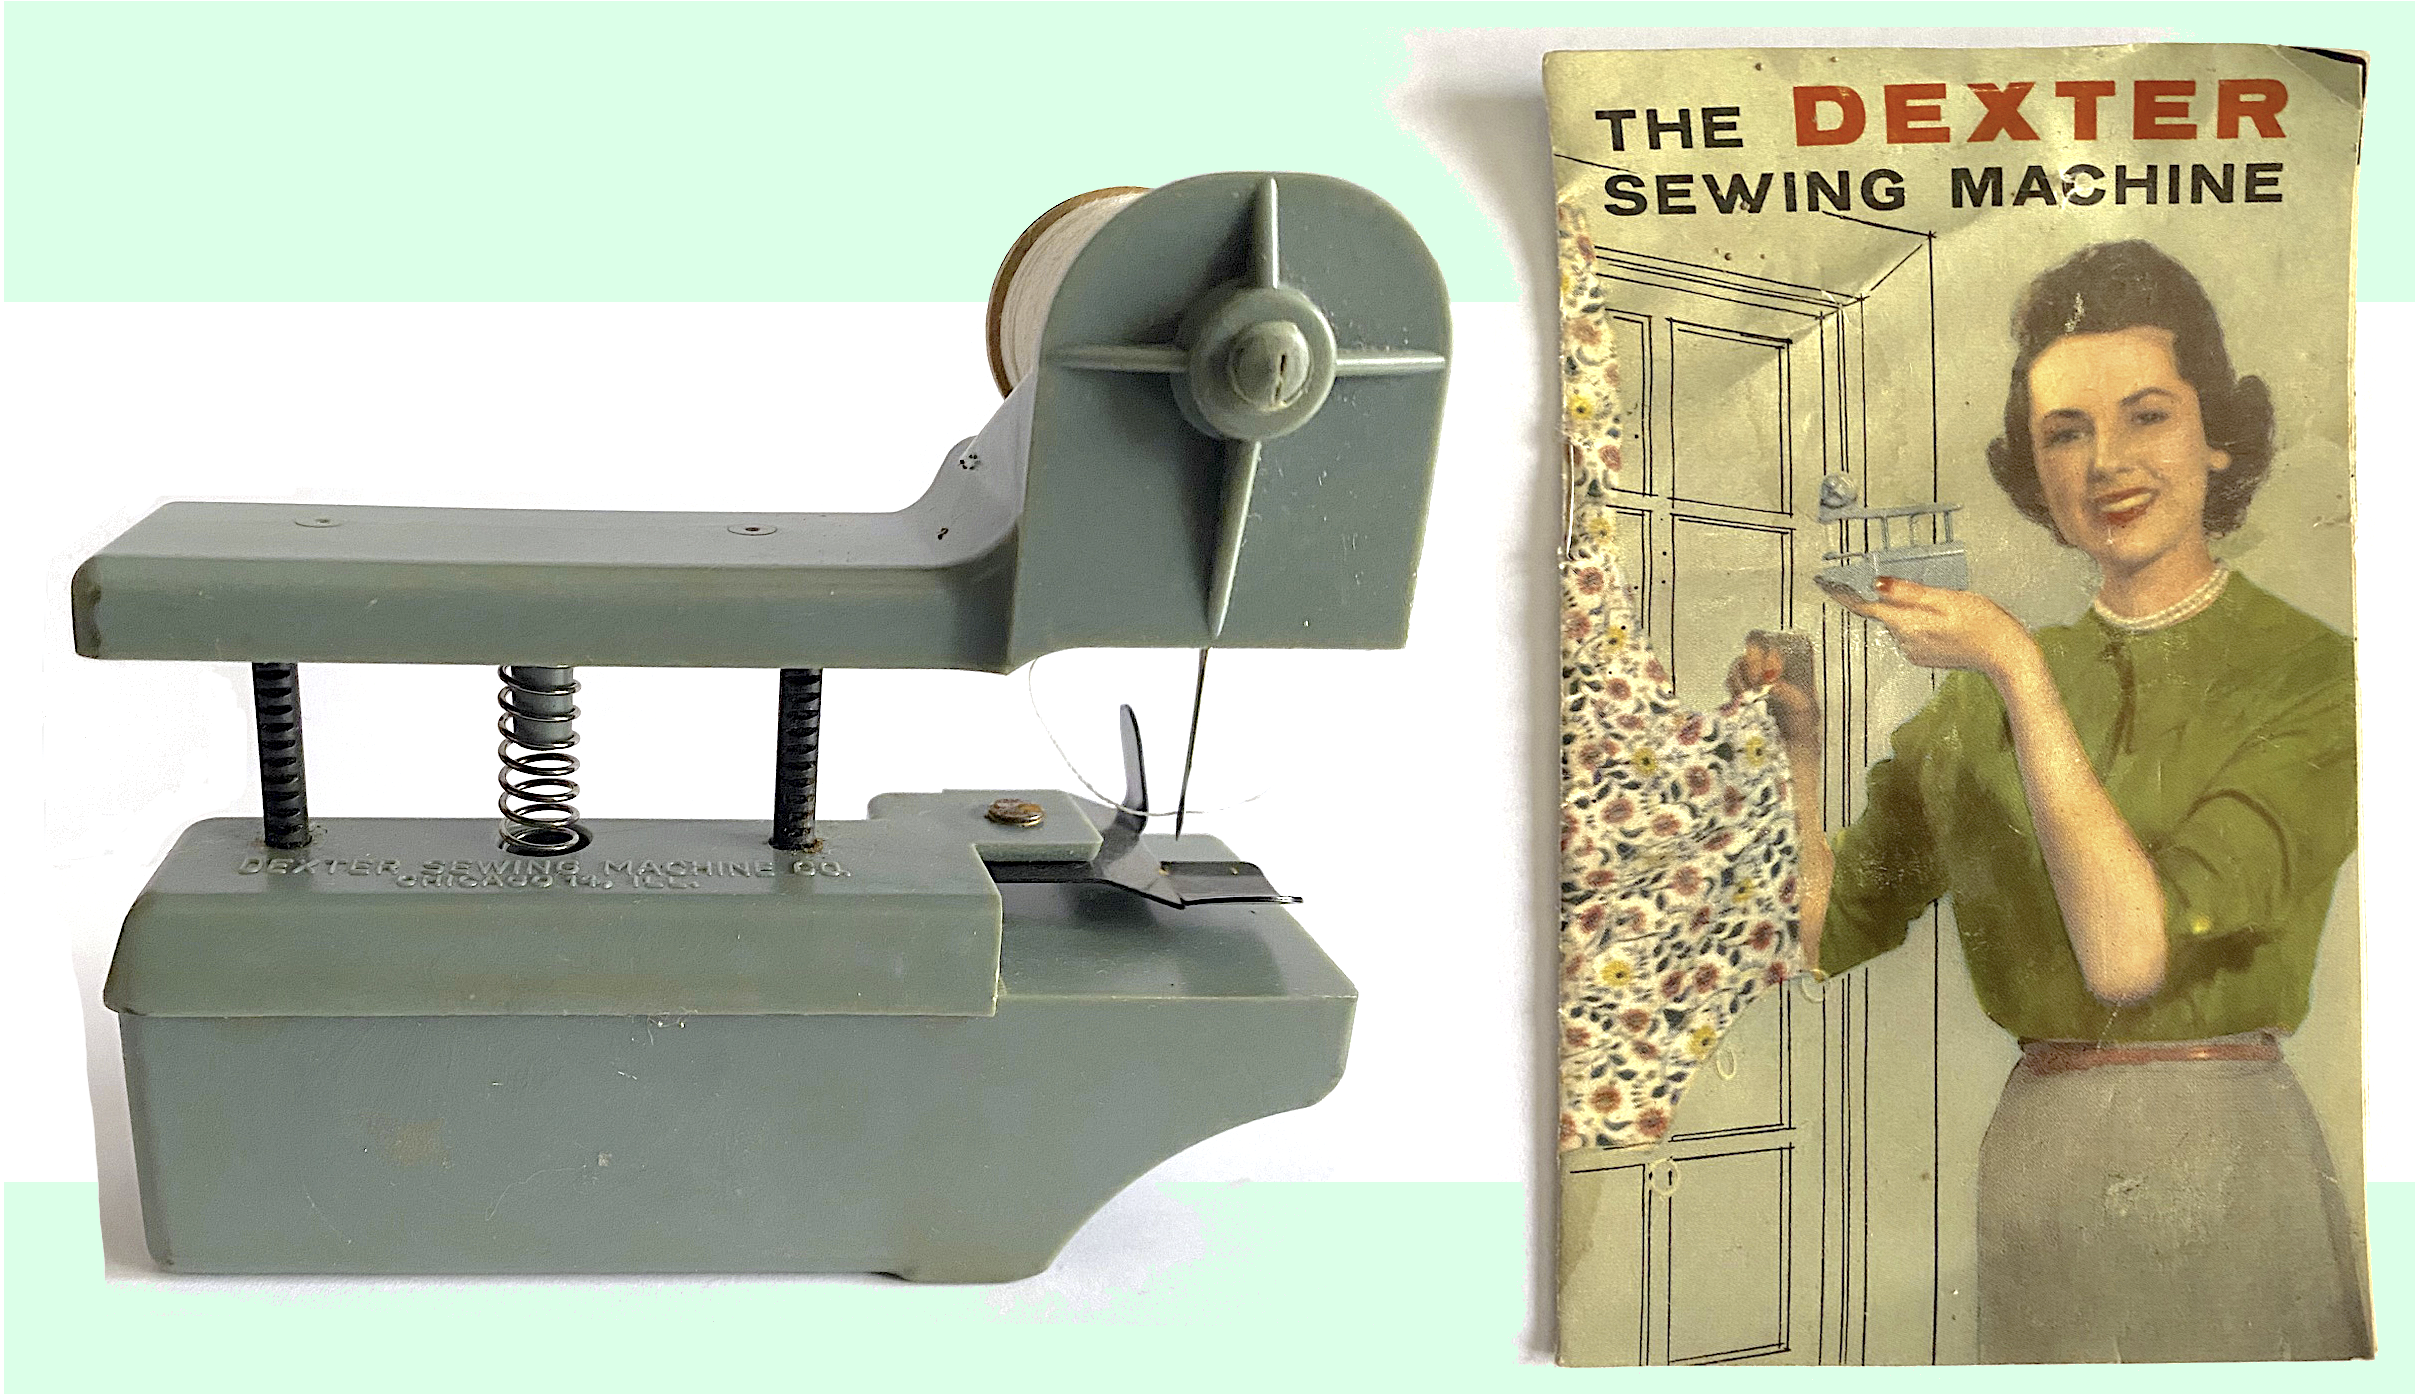 Dexter Sewing Machine Co., est. 1956